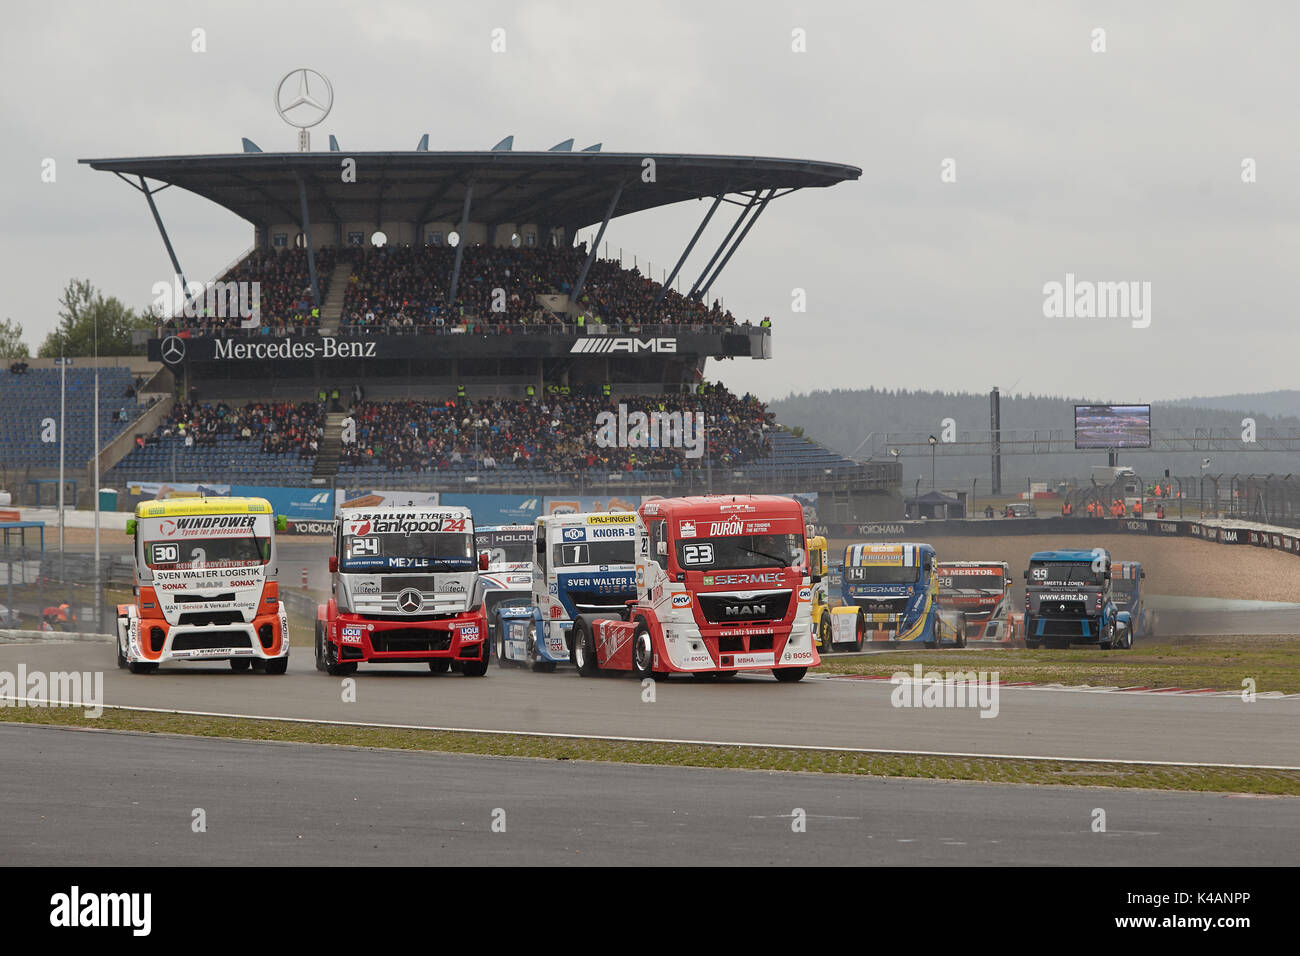 Grand Prix de camion ADAC 2017 sur le circuit de course du Nürburgring, à Nürburg, Rhénanie-Palatinat, Allemagne Banque D'Images